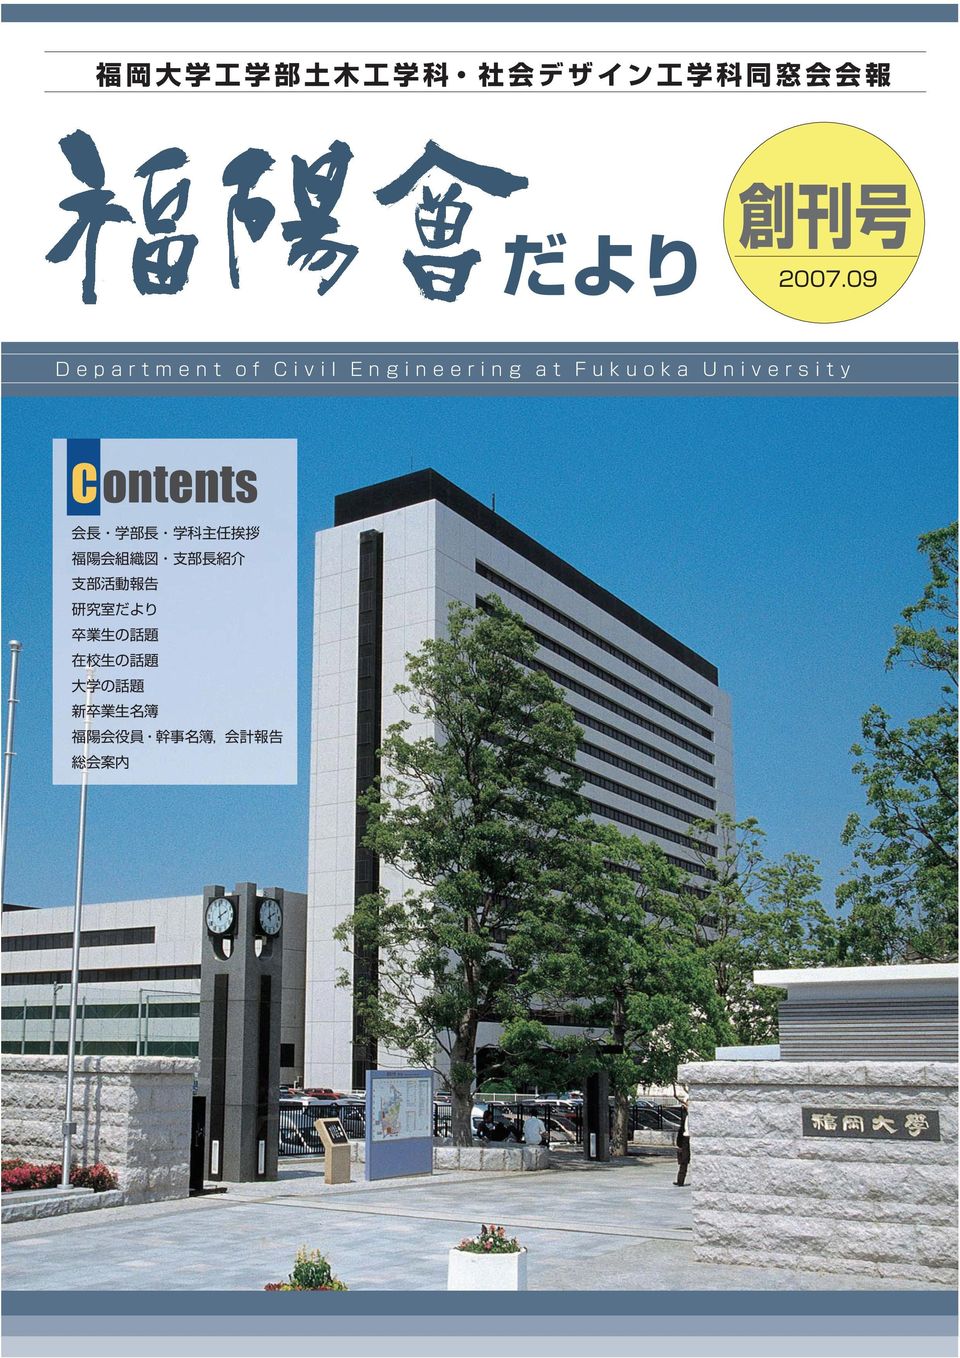 09 Department of Civil Engineering at Fukuoka